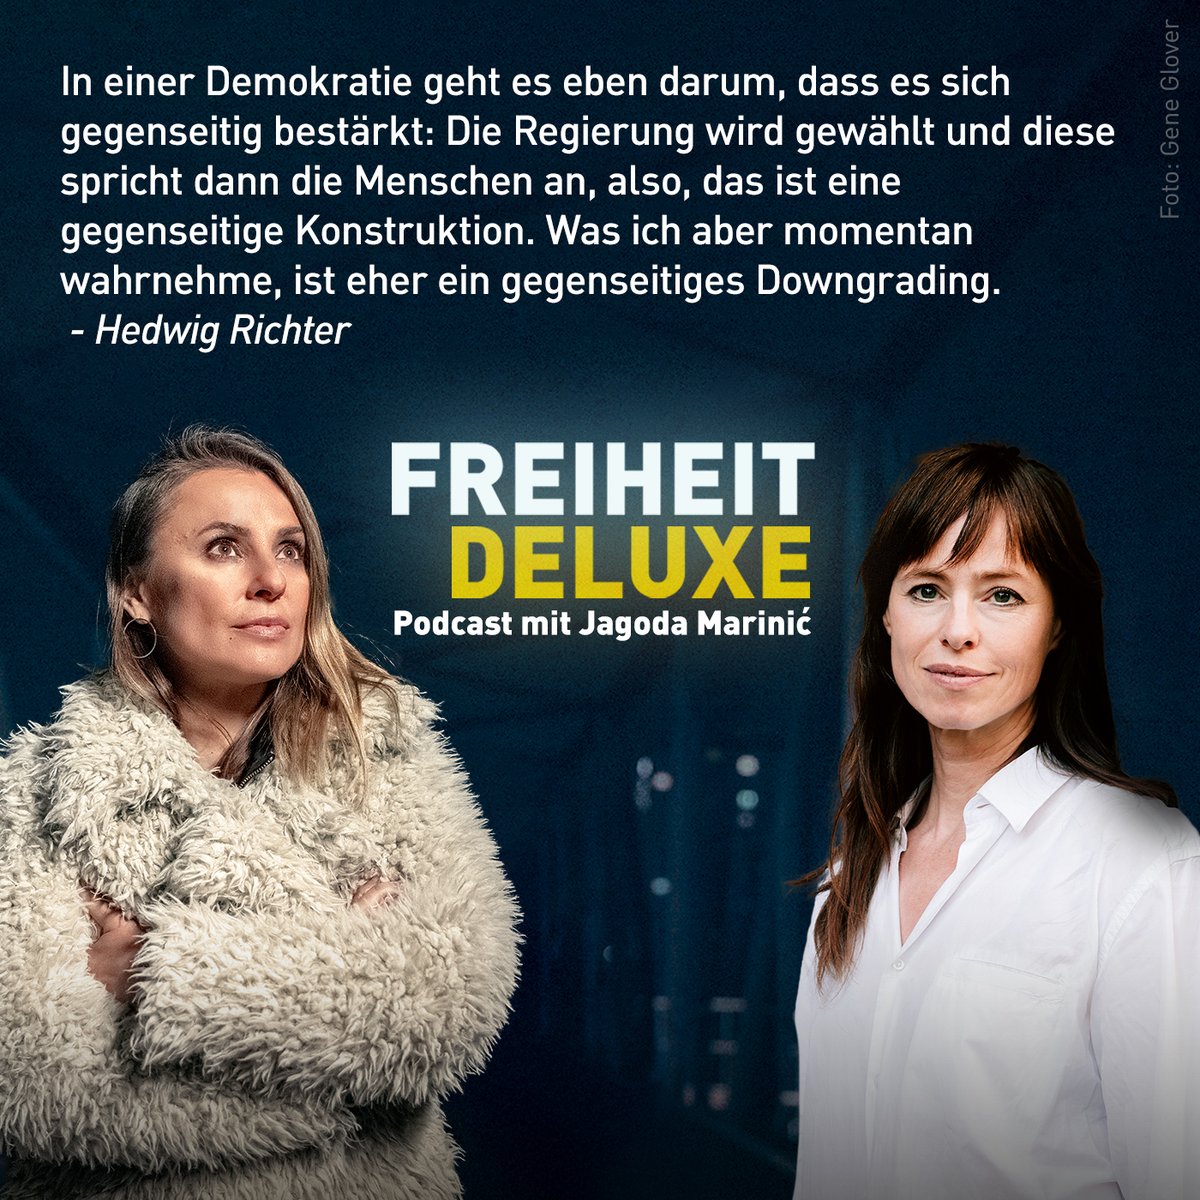 Das Upgrade für euren Samstag: Hört Freiheit Deluxe mit Host @jagodamarinic und @RichterHedwig ☑️ ardaudiothek.de/episode/freihe…